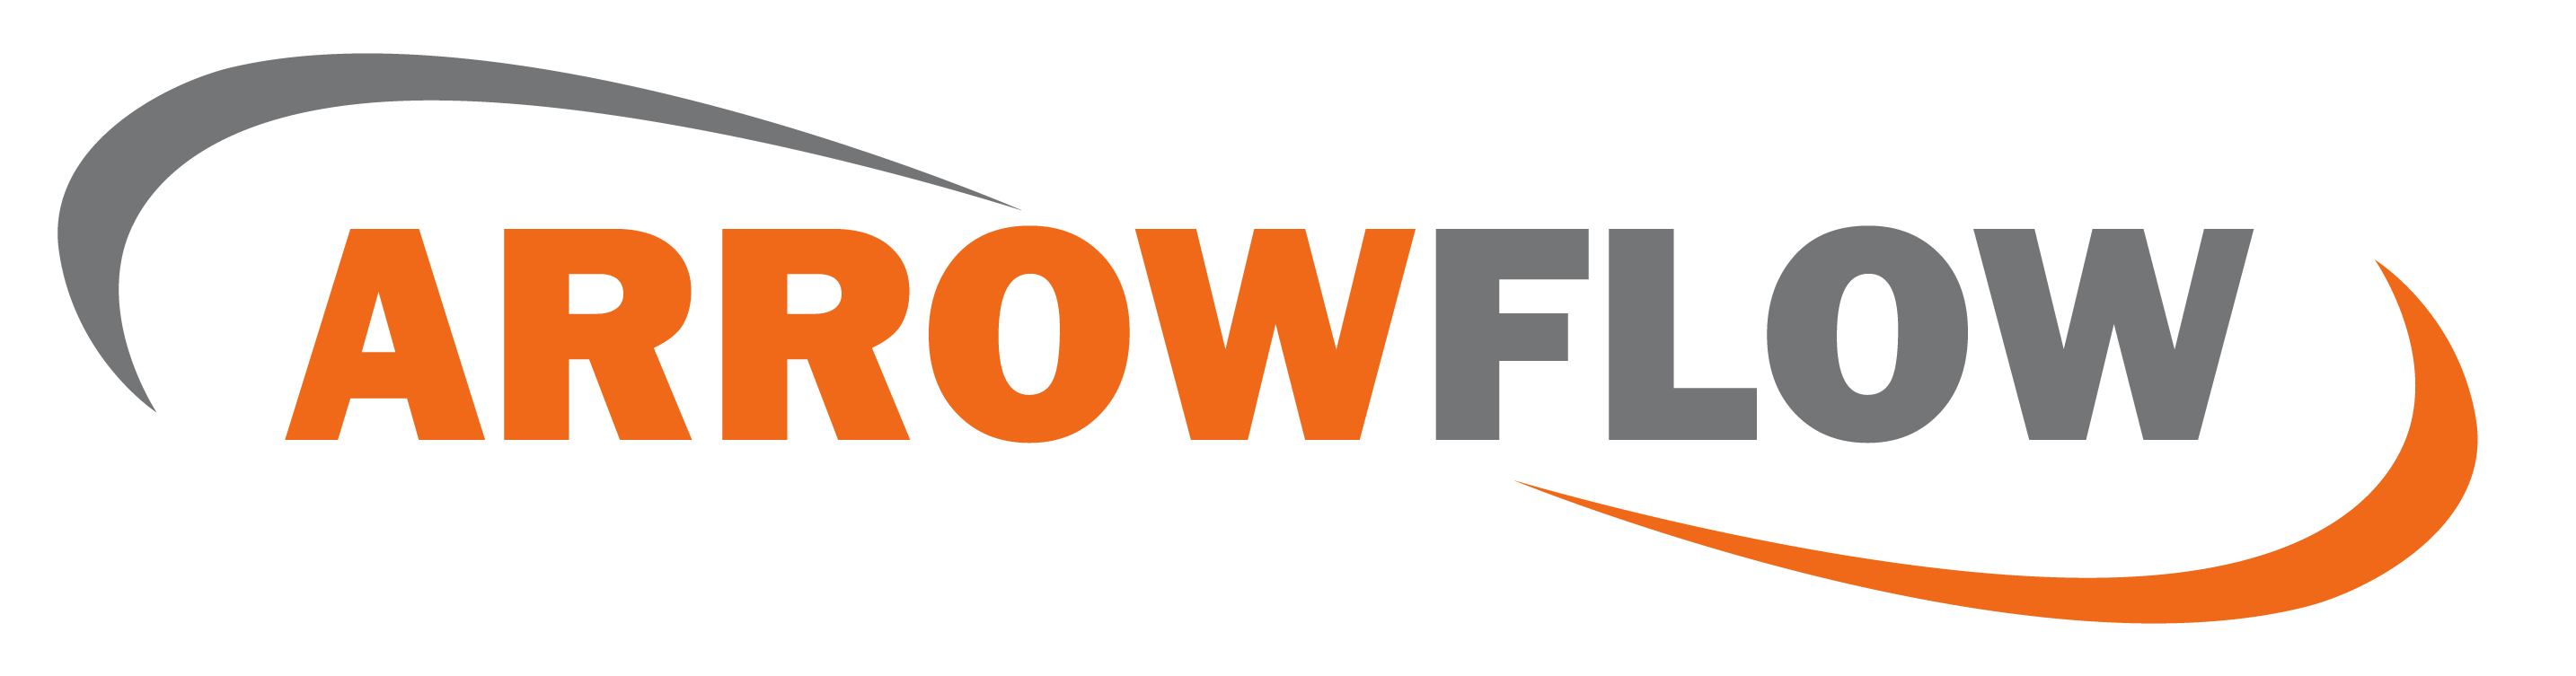 Arrowflow